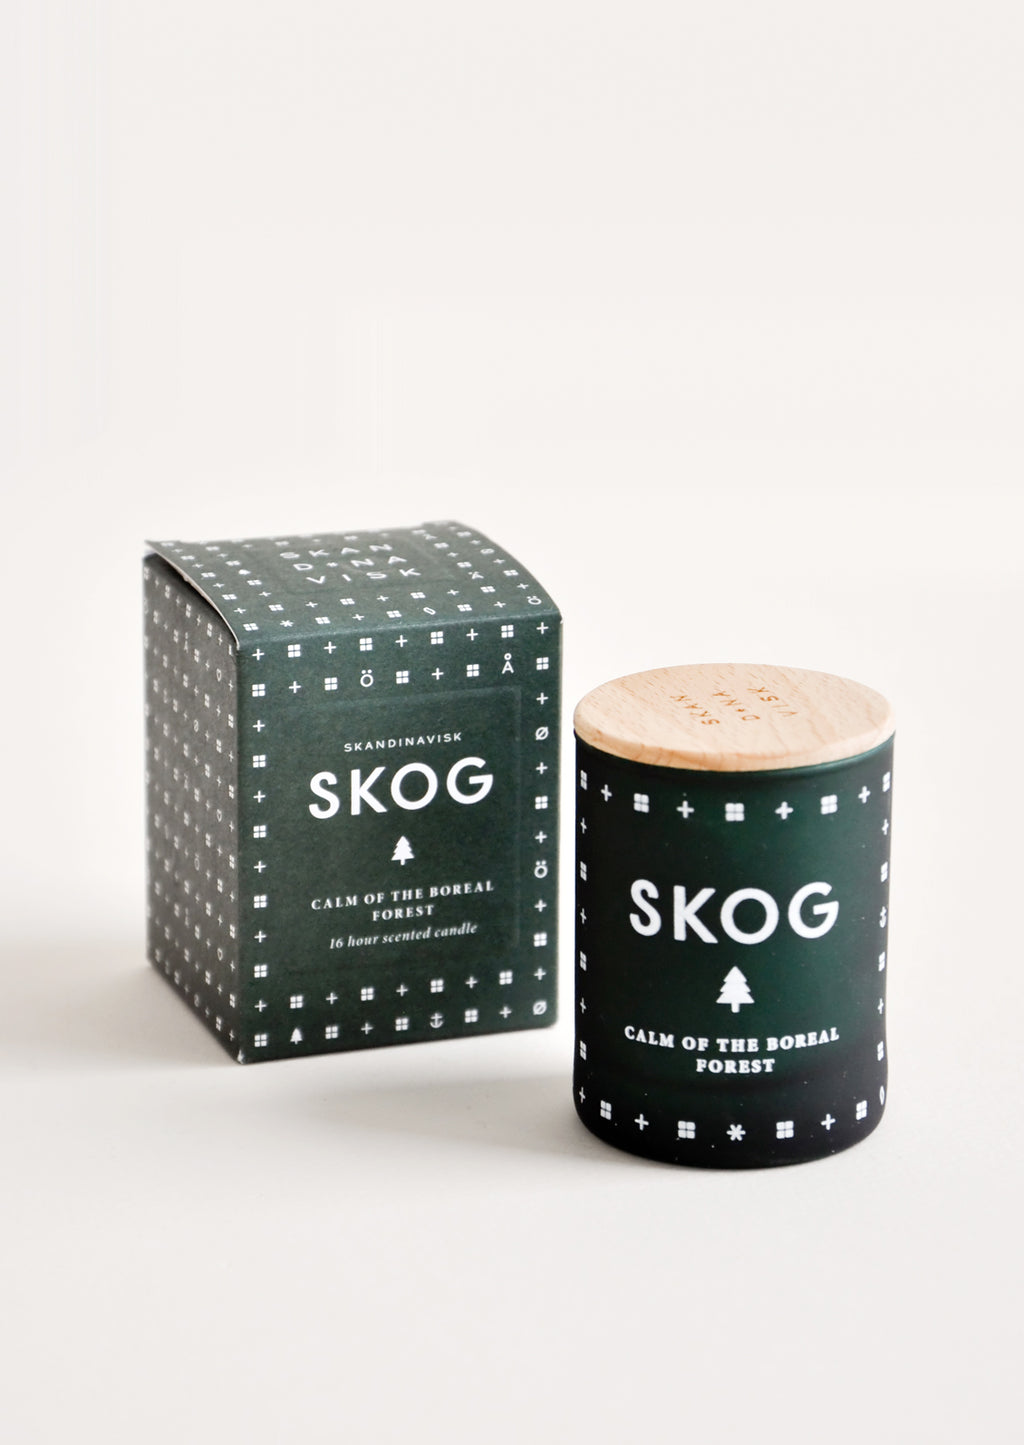 2 oz / Skog (Forest): Skandinavisk Candle in 2 oz / Skog (Forest) - LEIF